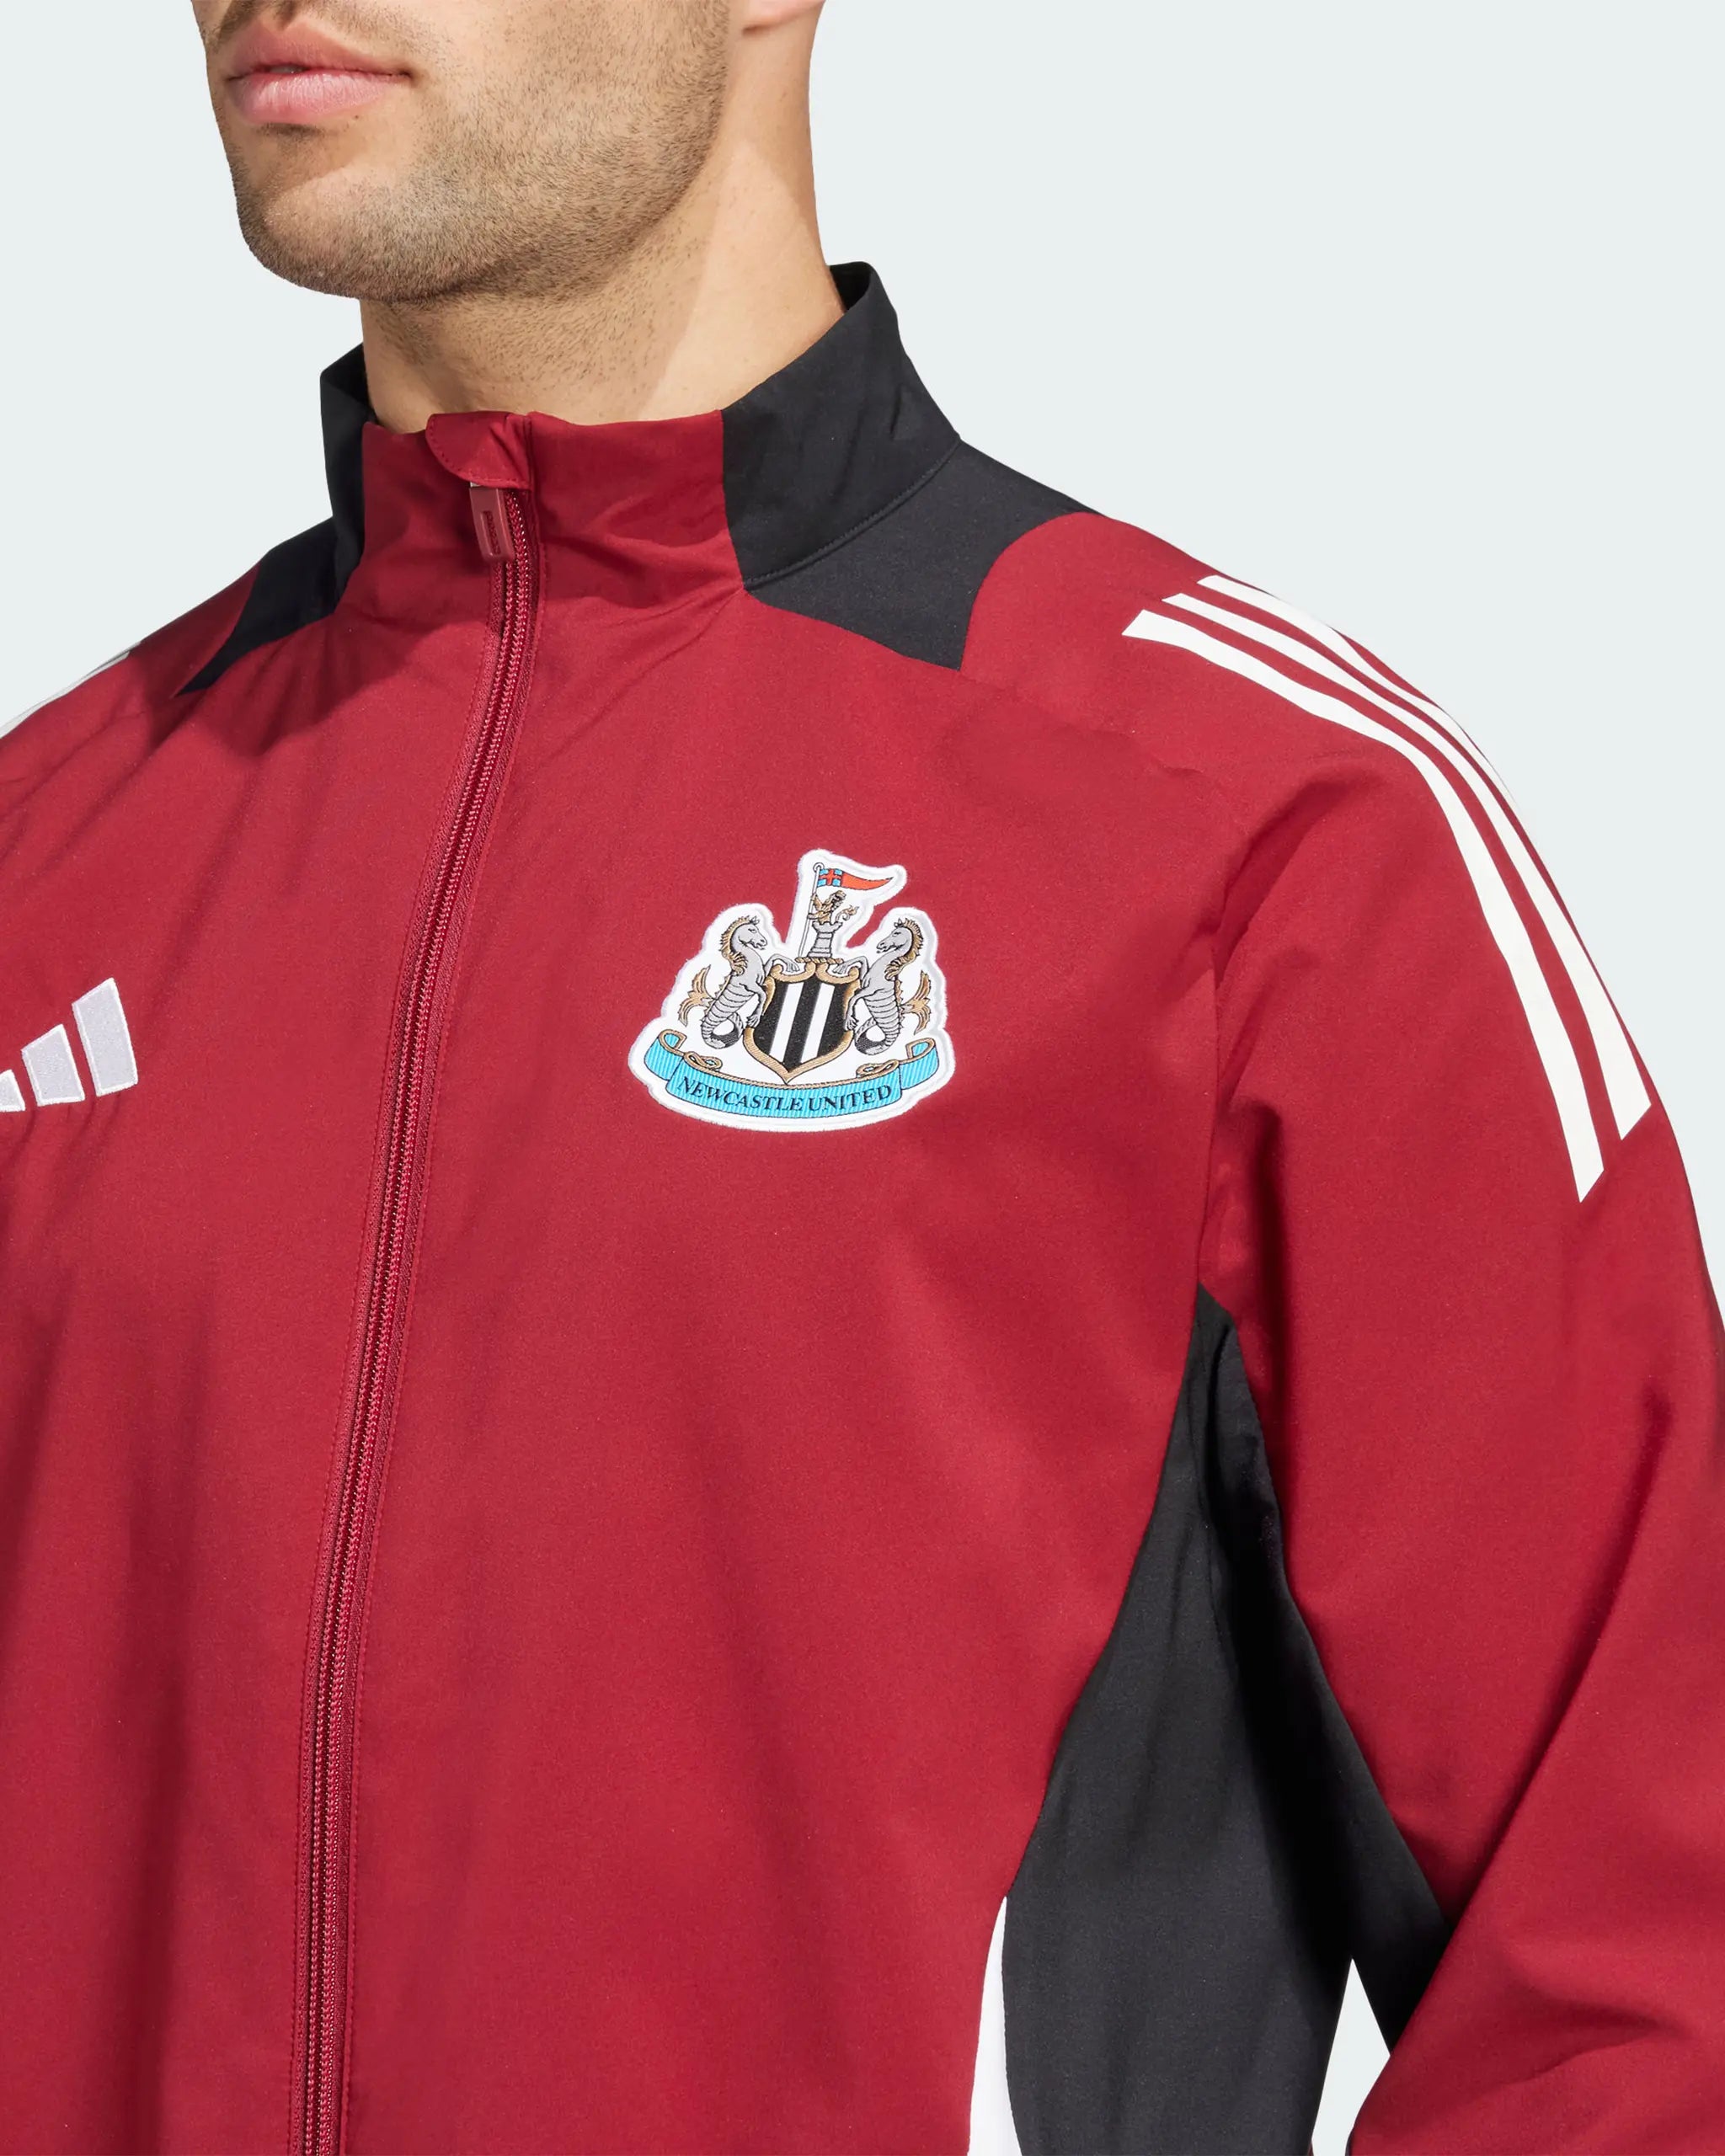 Newcastle United adidas 24/25 Players' Presentation Jacket